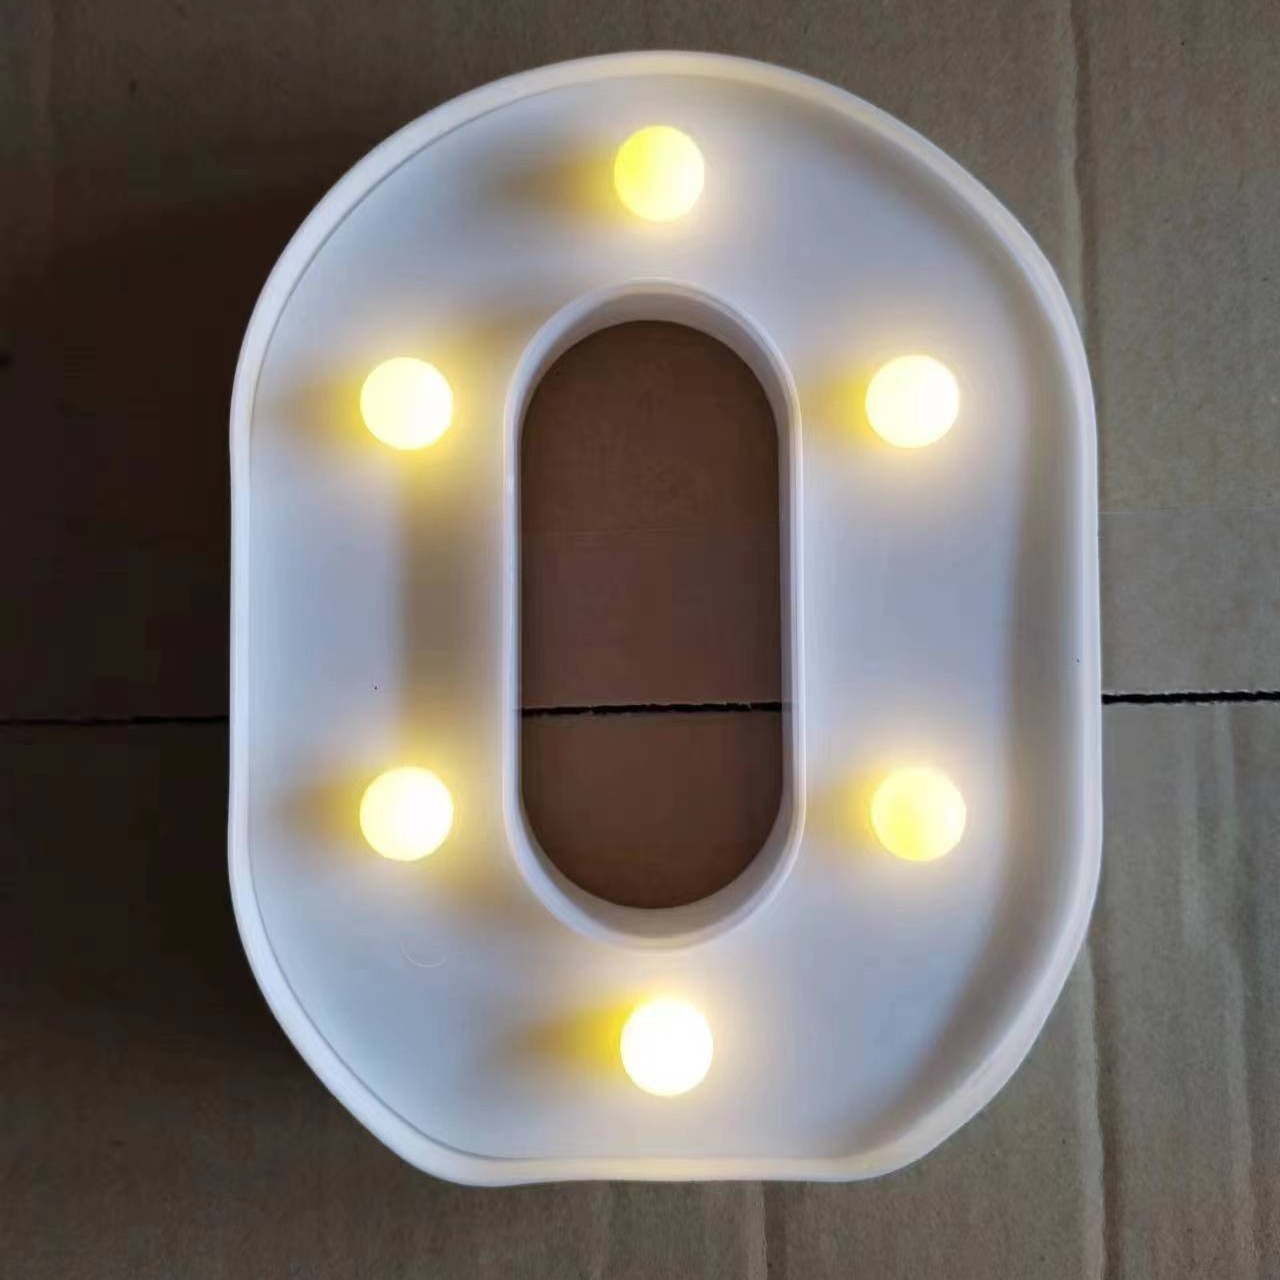 Nueve propuestas en iluminación LED para decorar tu casa estas